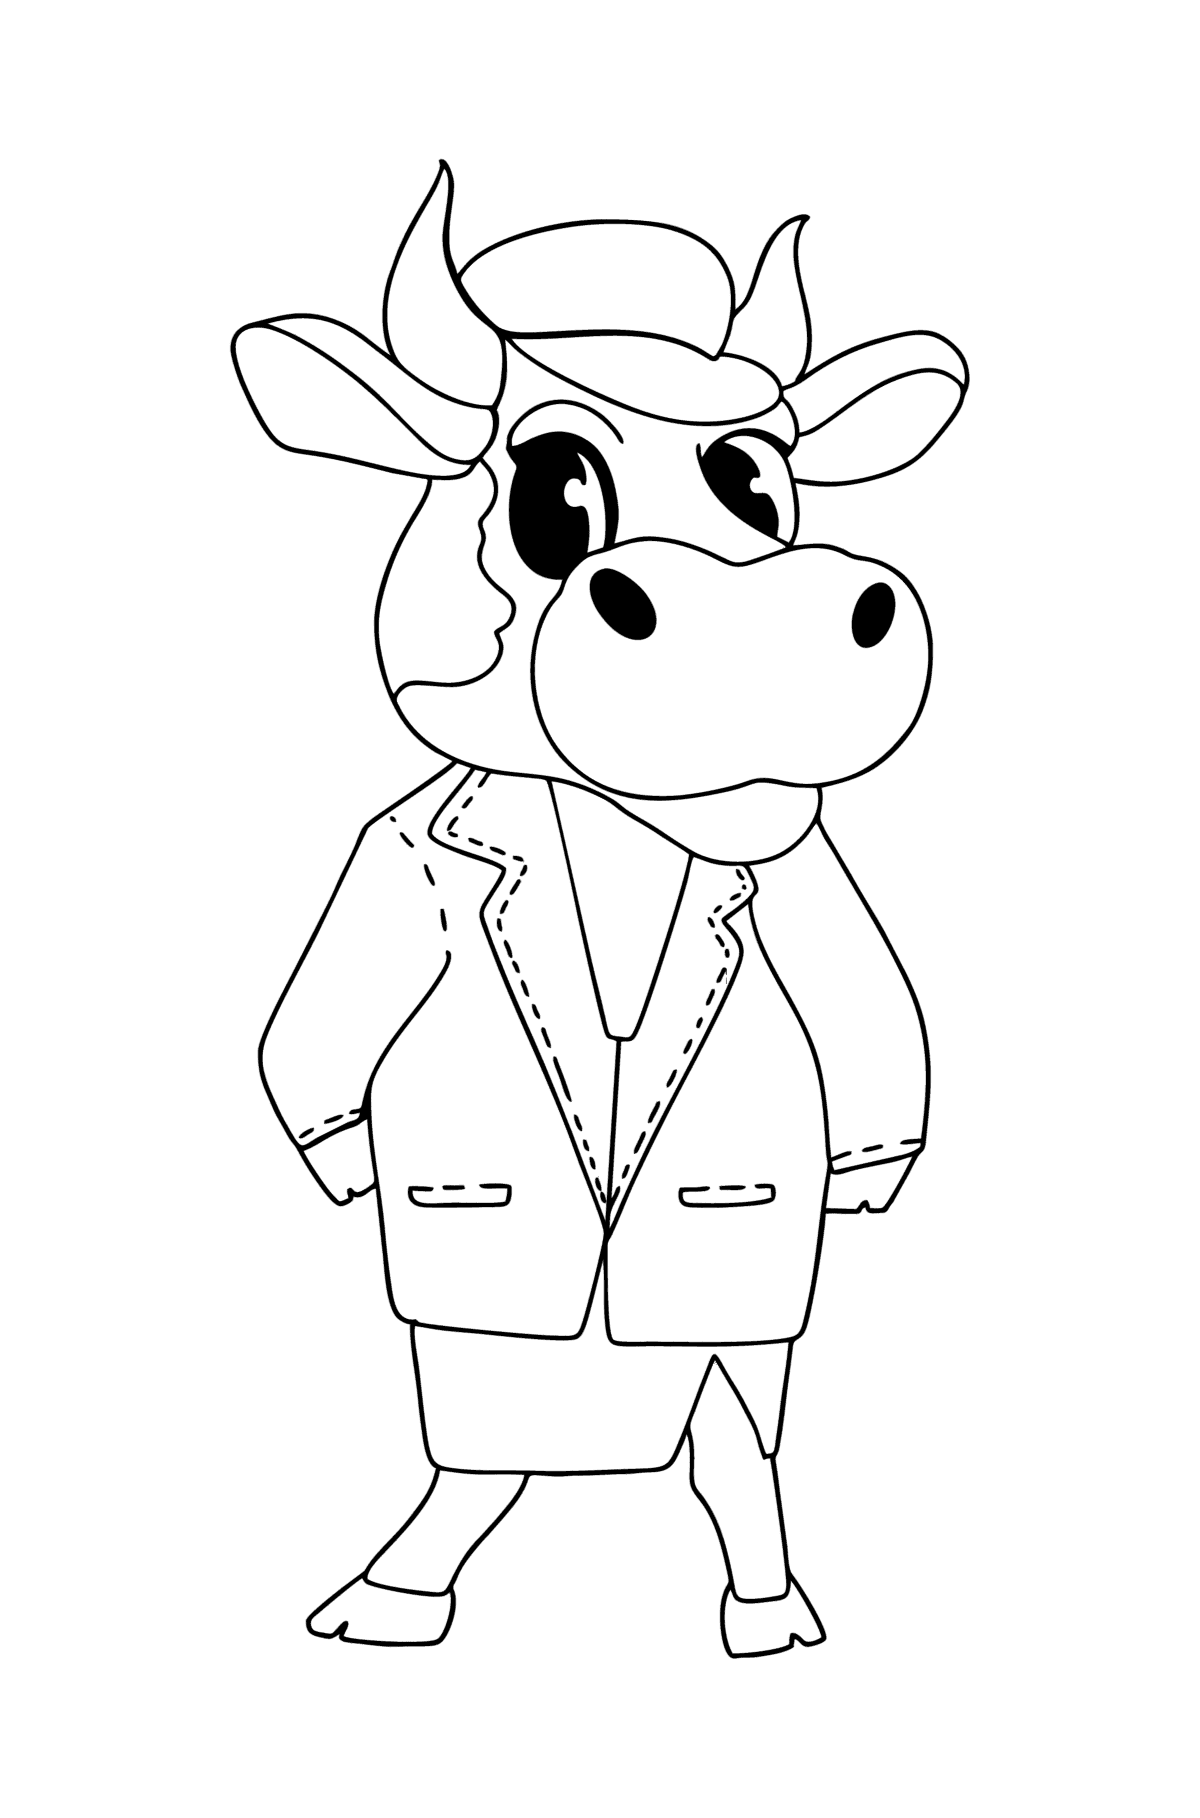 Malbuch Zeichnung einer Kuh - Malvorlagen für Kinder